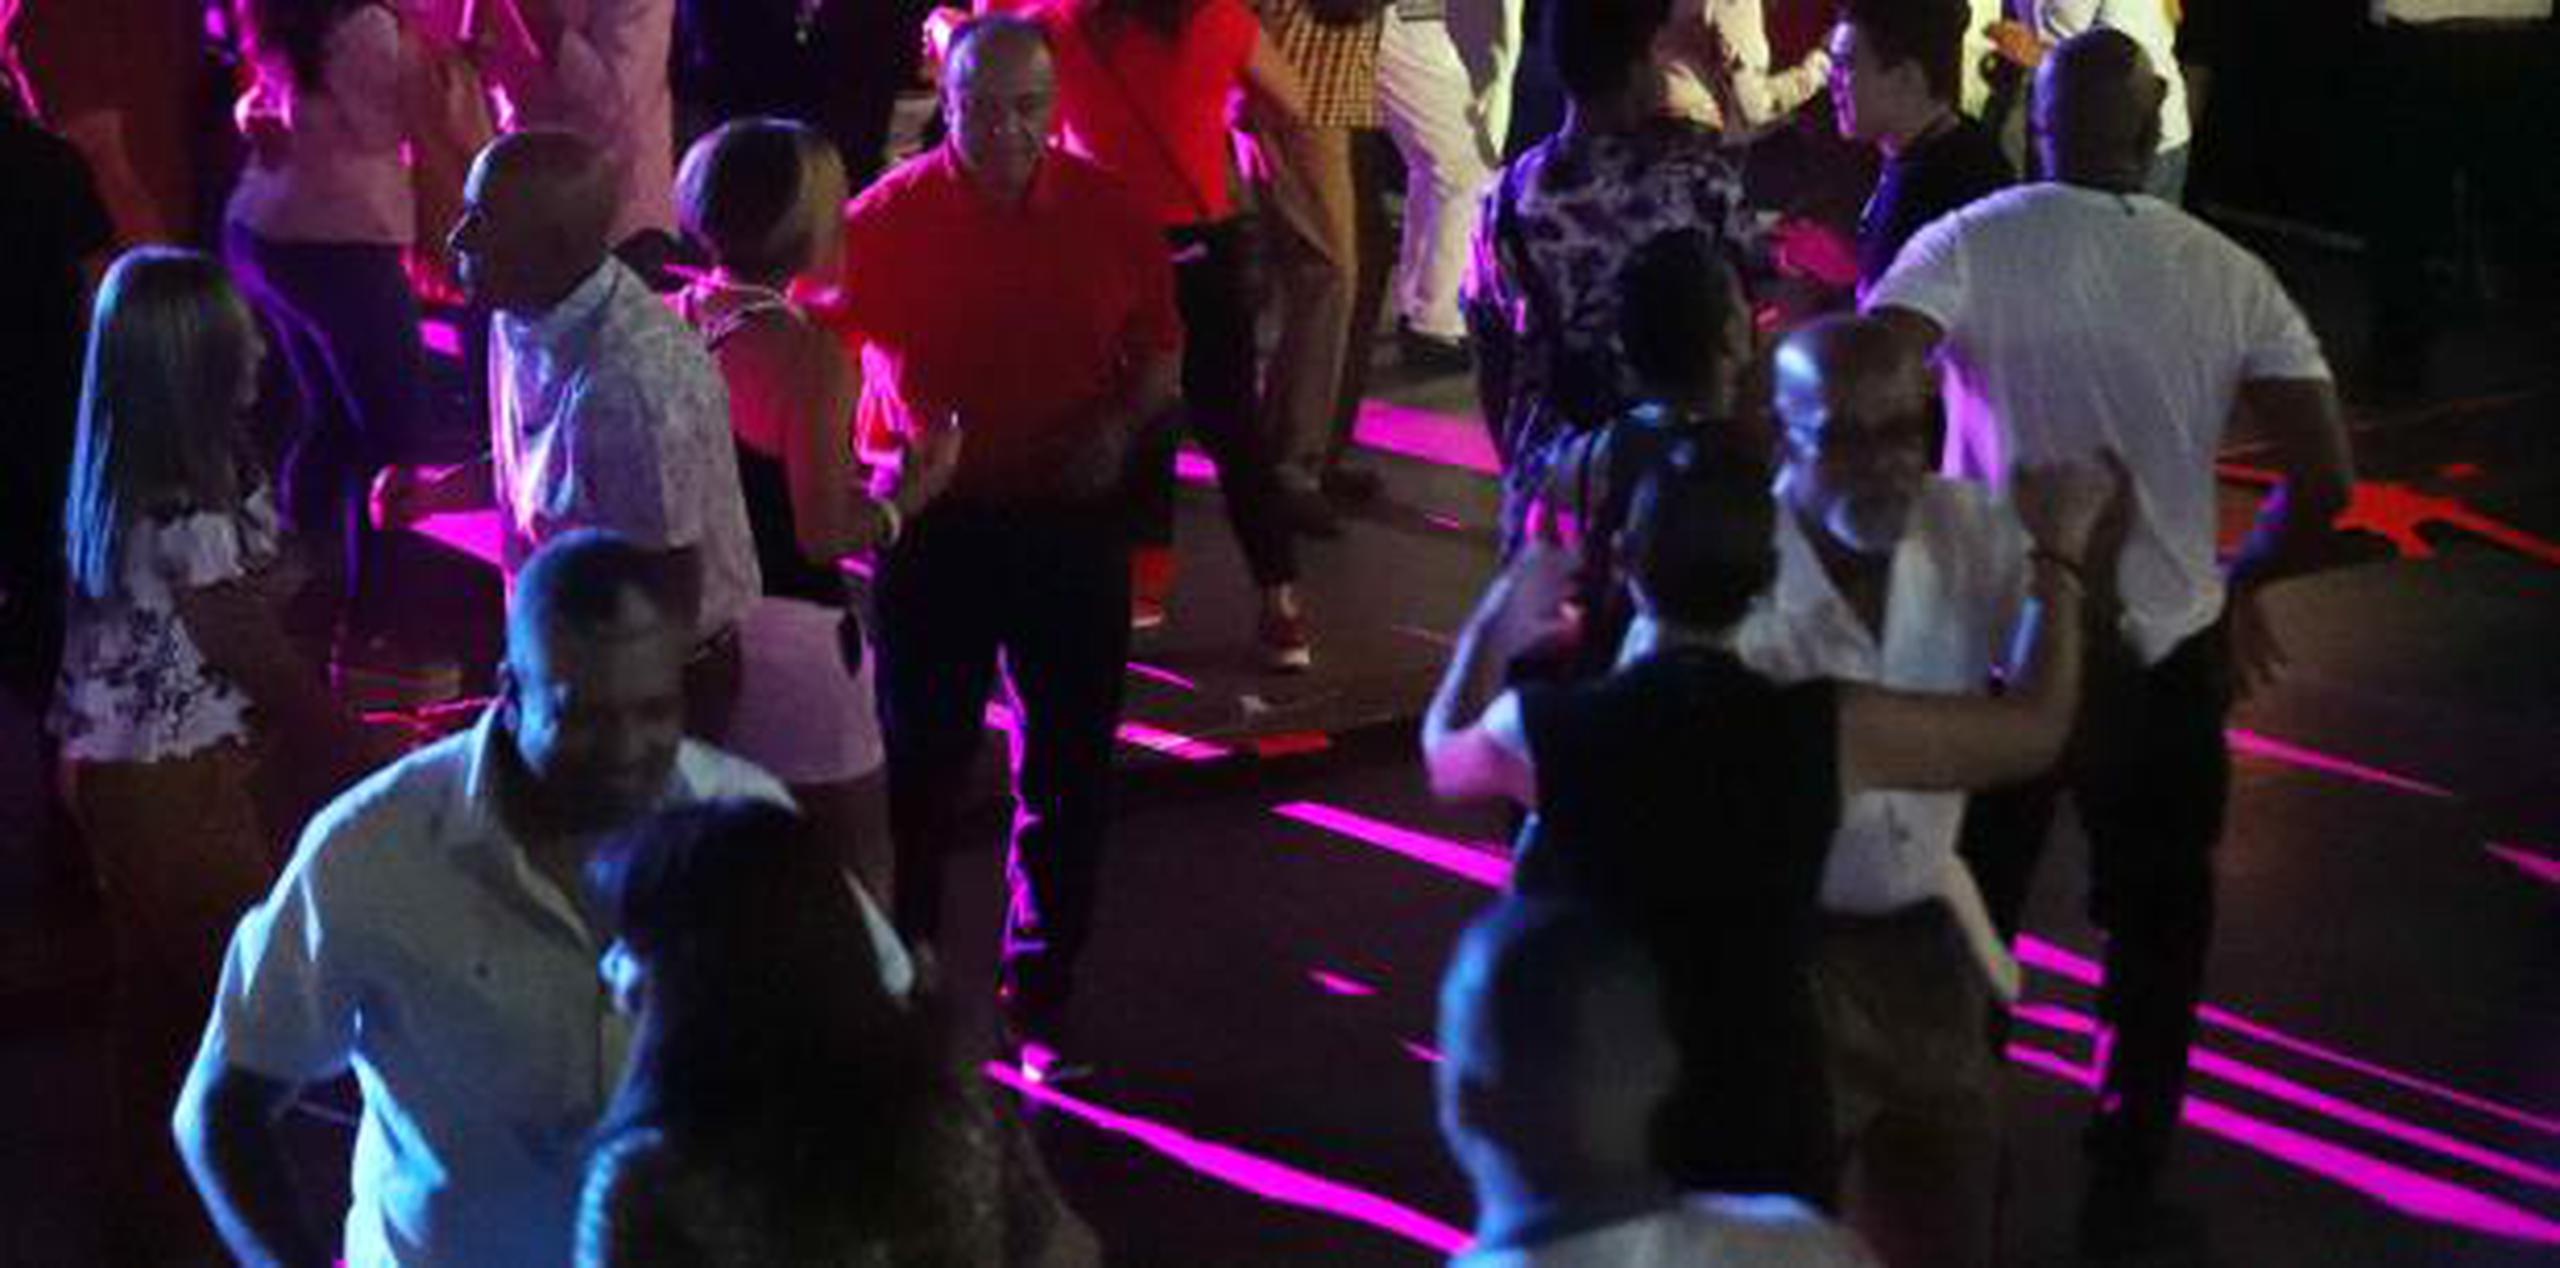 El  cuadragésimo aniversario de la emisora Z-93 convirtió al Coliseo de Puerto Rico en un enorme salón de baile.(juan.martinez@gfrmedia.com)